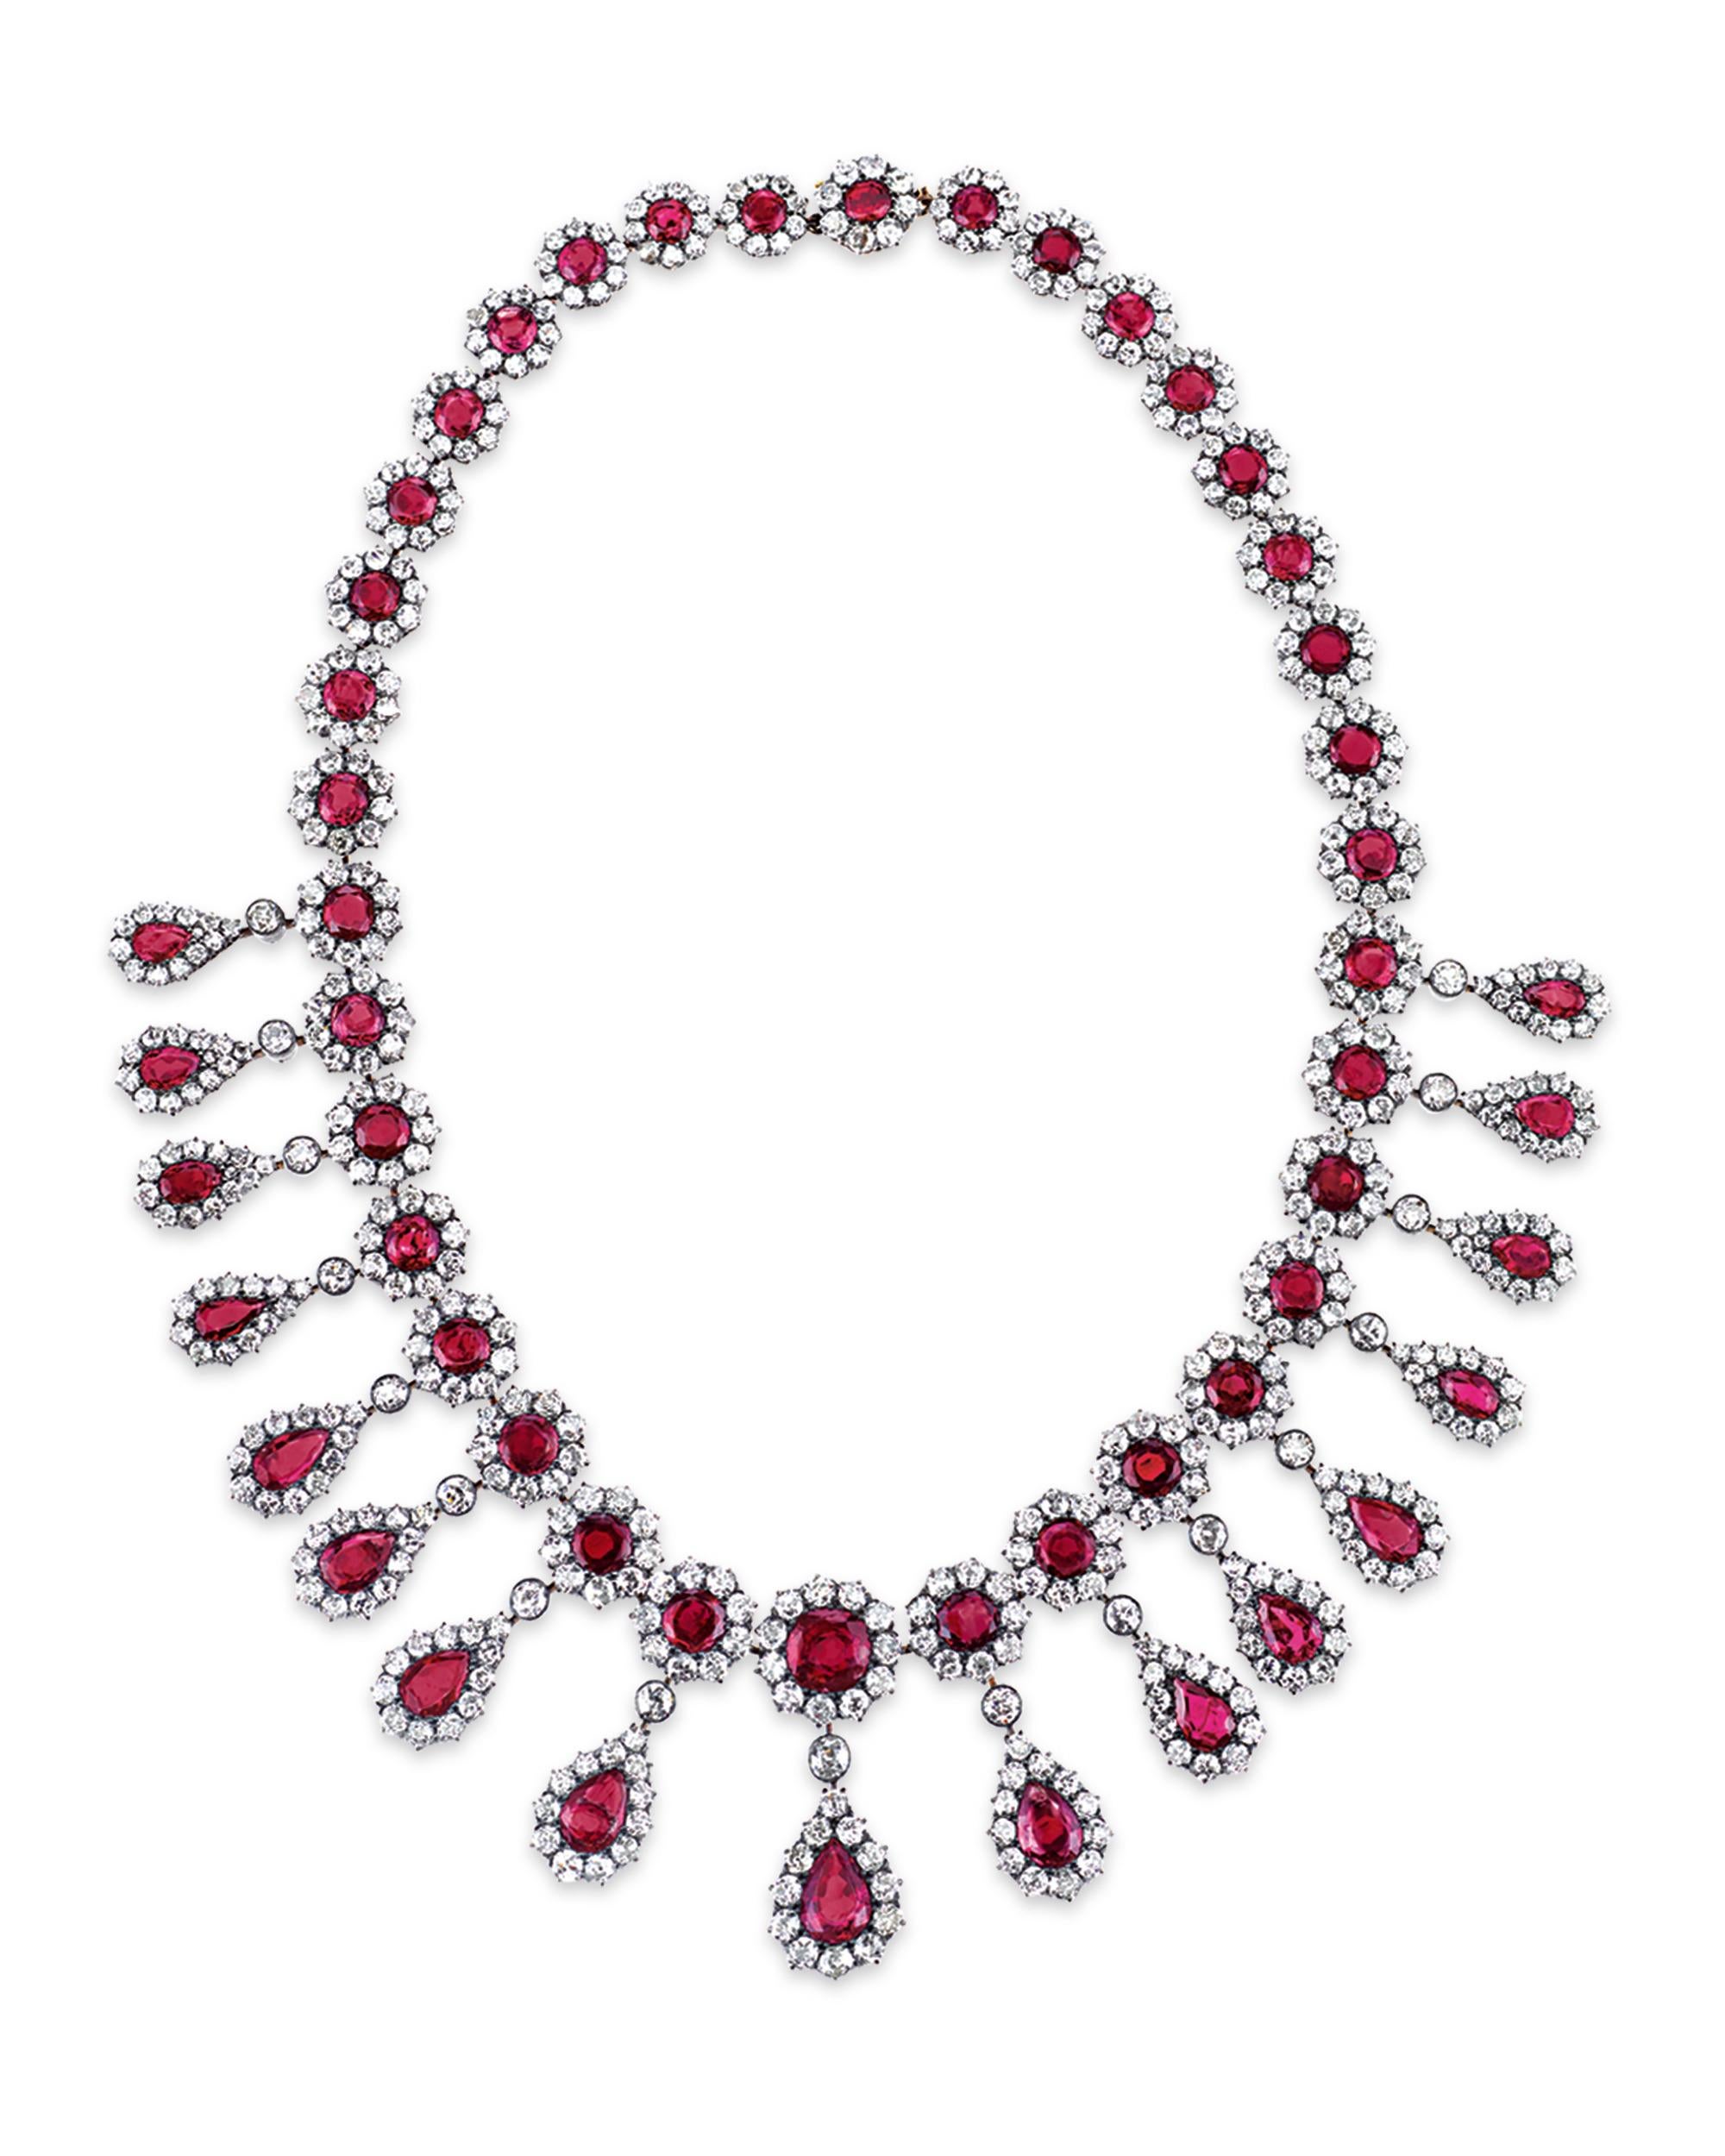 De somptueux rubis de Birmanie et de vibrants diamants blancs s'unissent dans ce sensationnel collier antique. D'une teinte rouge remarquable, les rubis de Birmanie totalisent environ 50 carats, tandis que les diamants qui les entourent pèsent 30